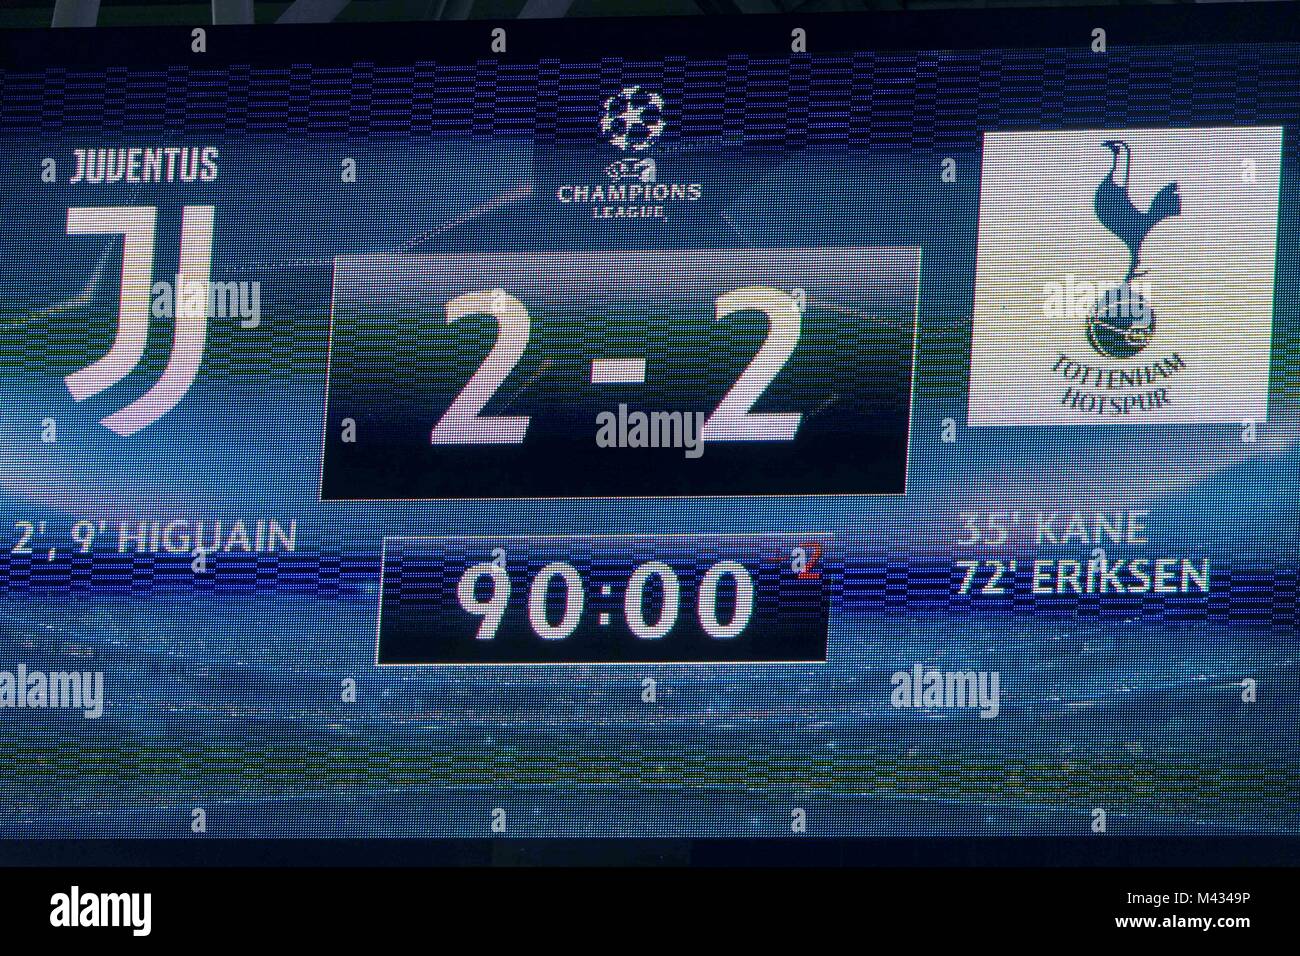 uefa final score